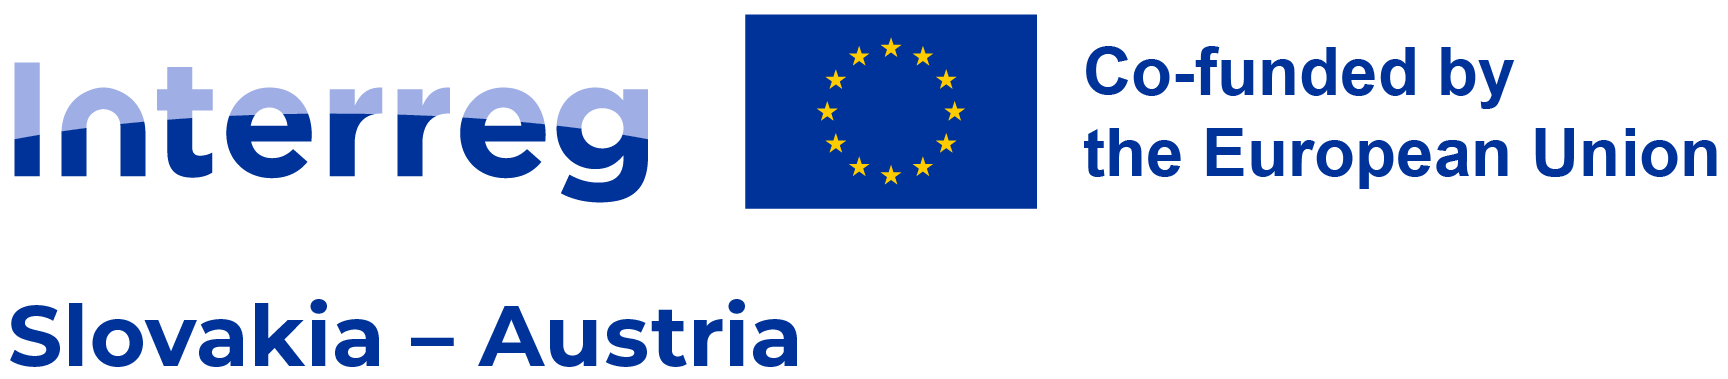 Interreg Slovakia – Austria